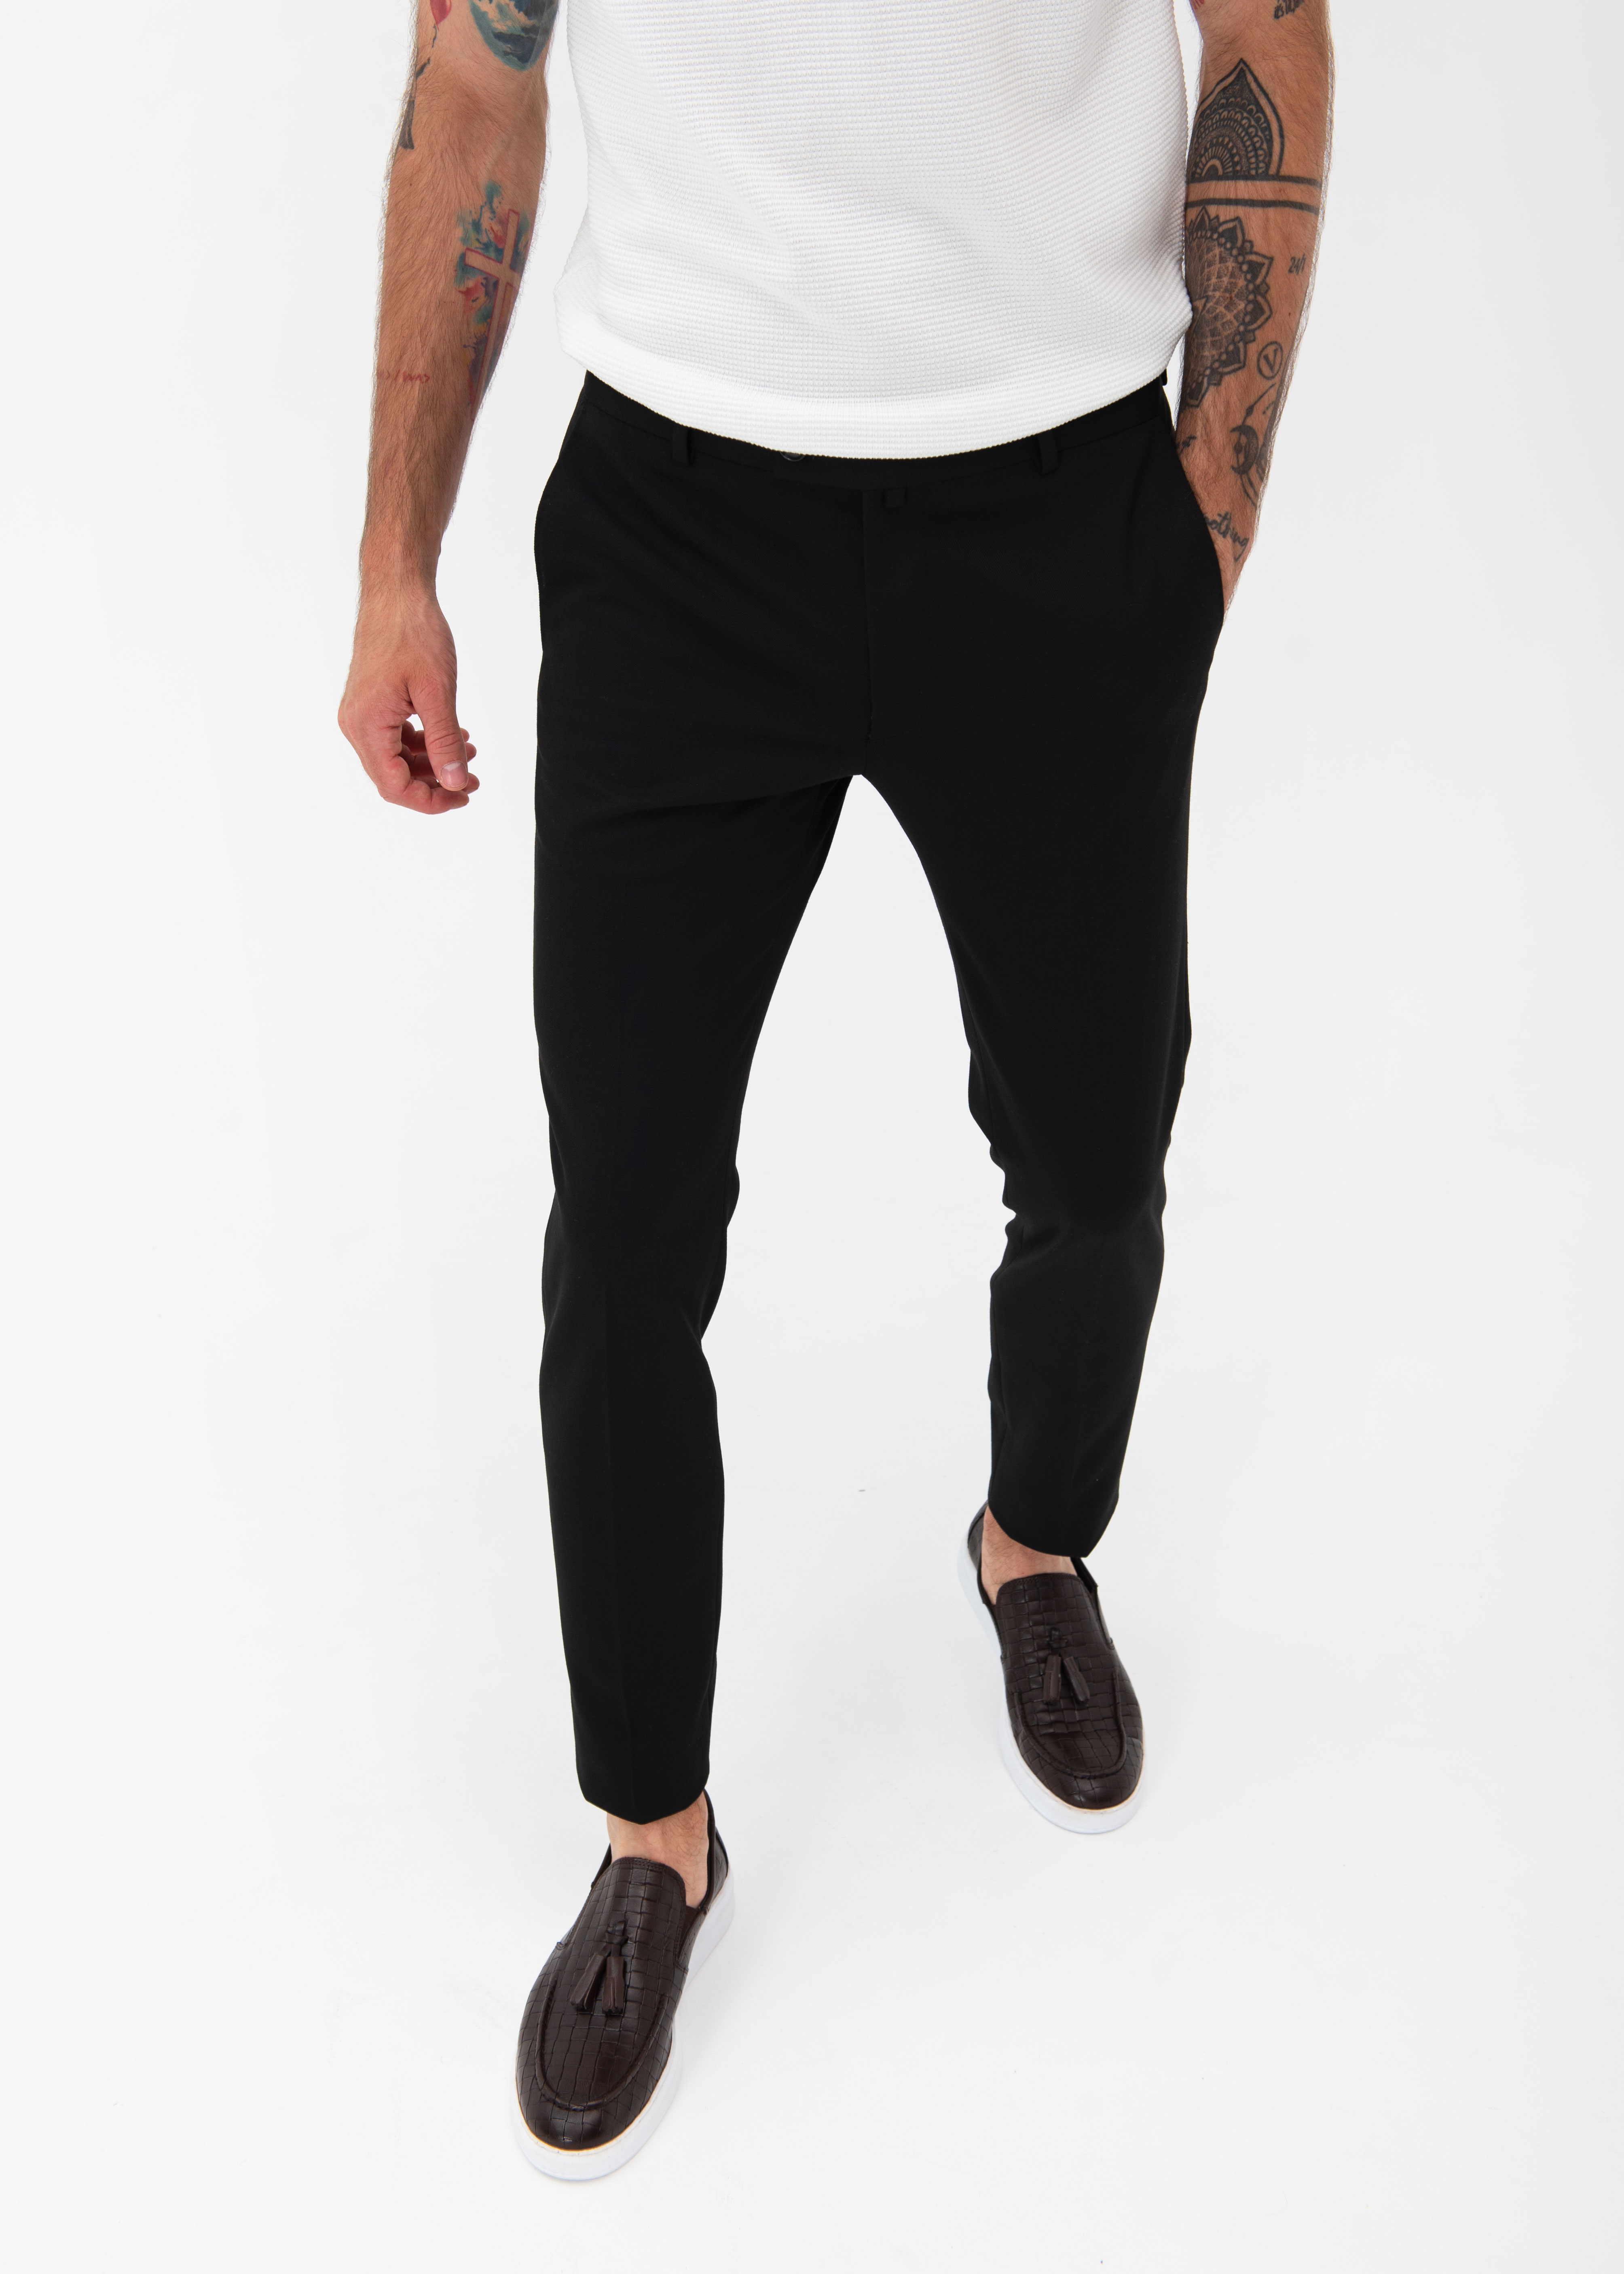 Мужские брюки черные (34)